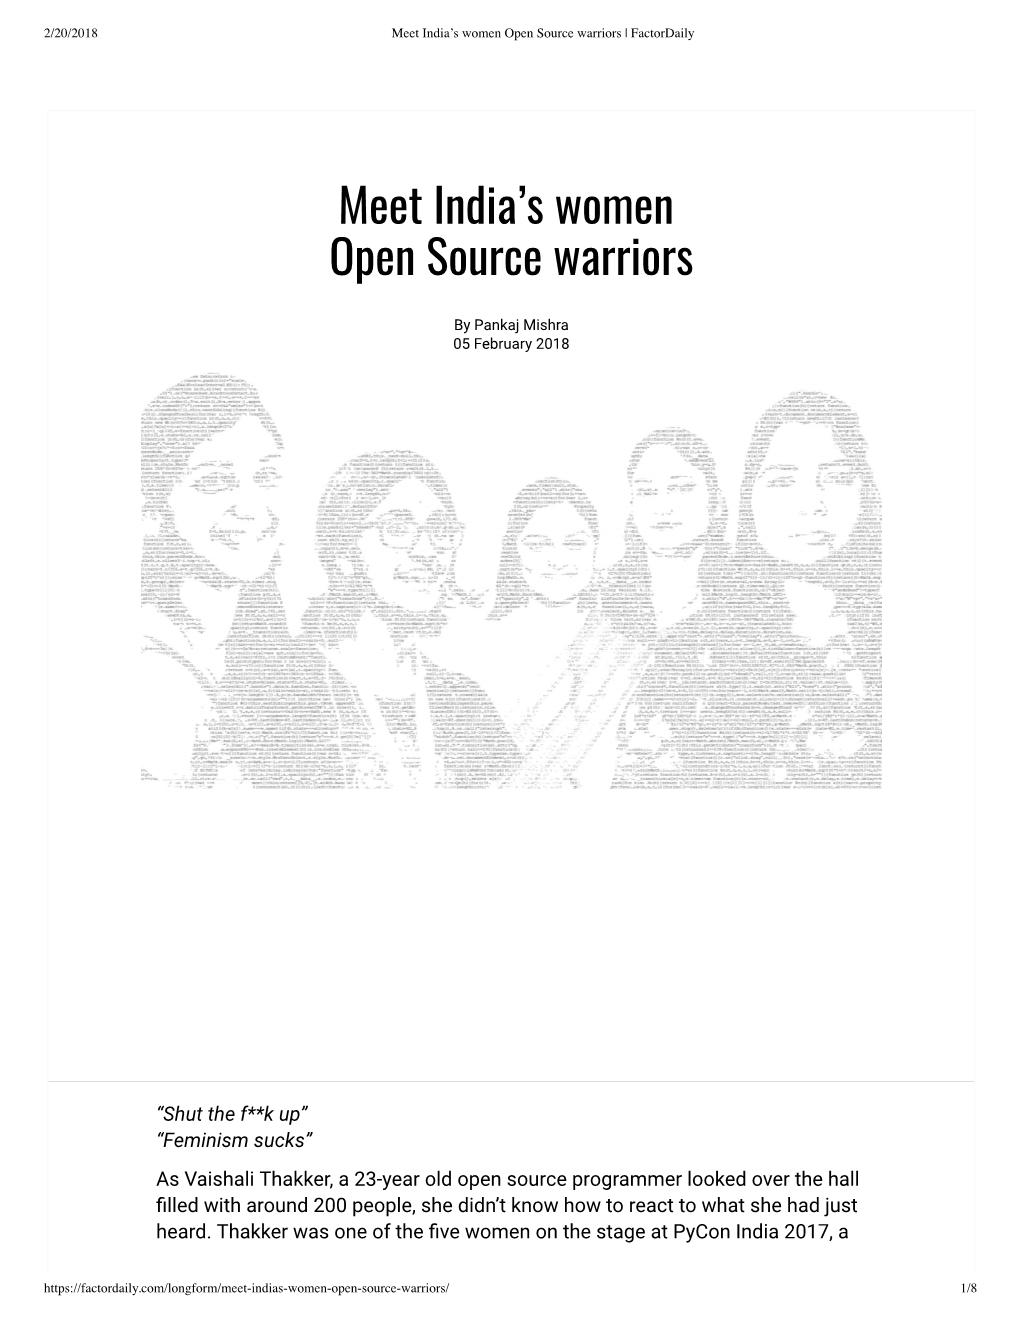 Meet India's Women Open Source Warriors